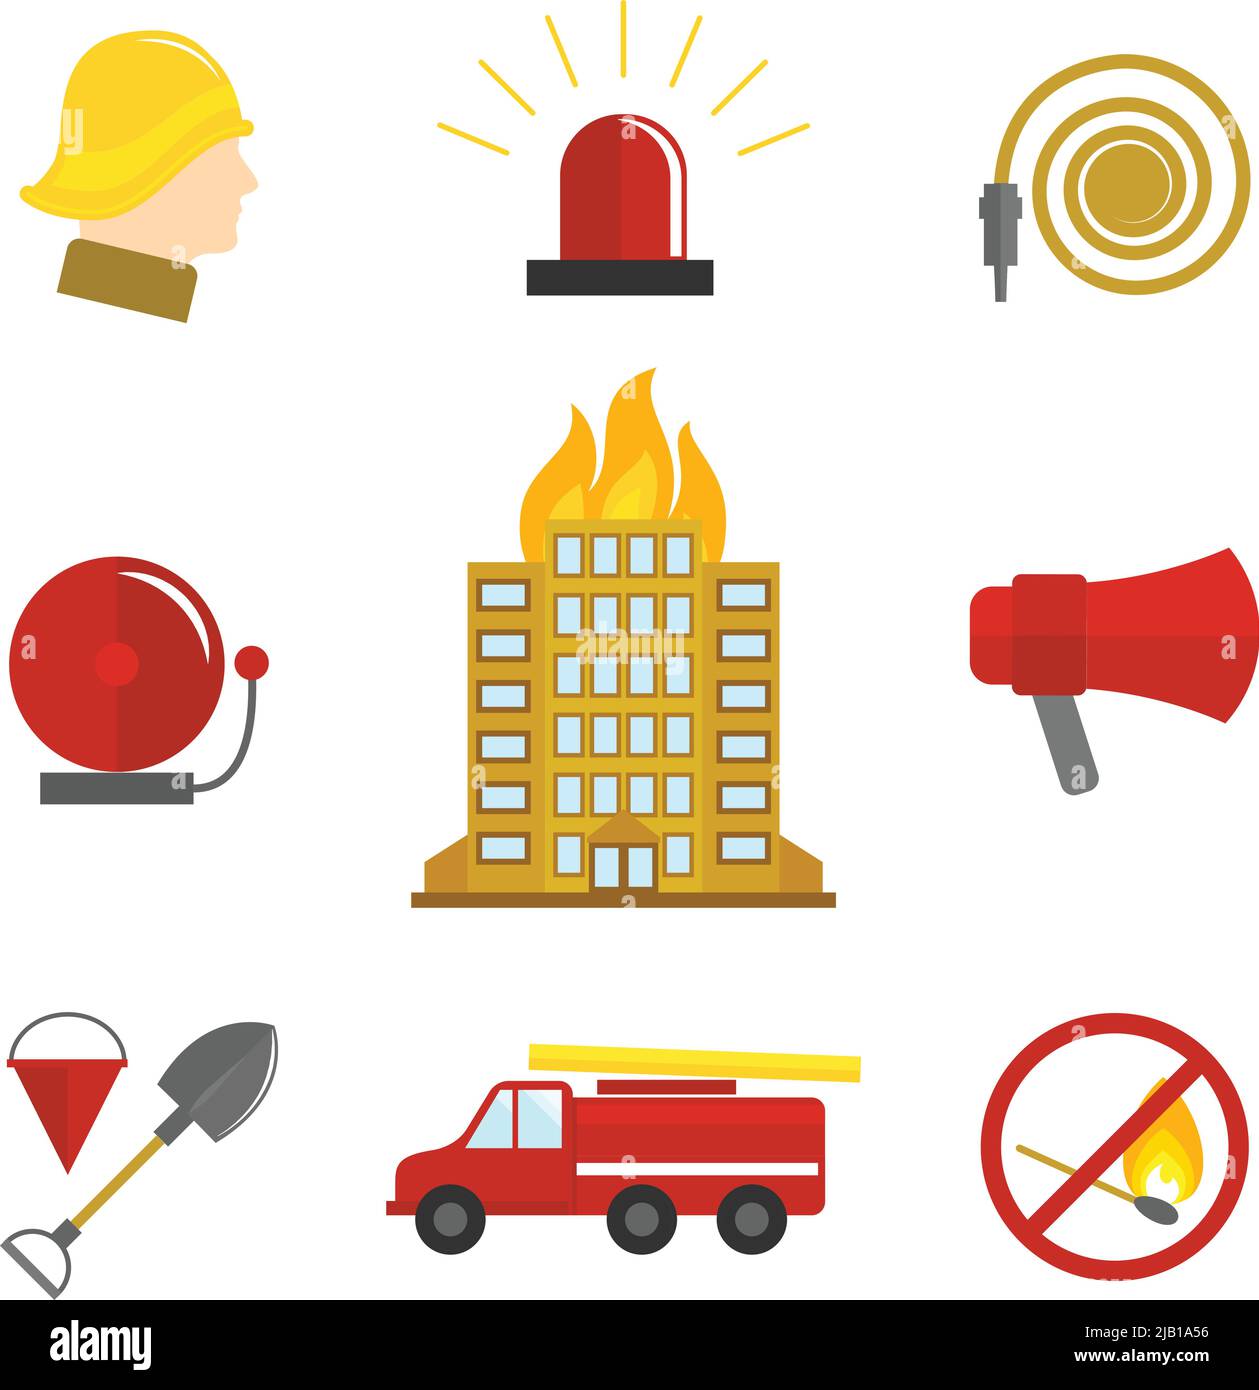 Brandbekämpfungs-Symbole flacher Satz brennender Gebäude Feueralarm Wasserschlauch isolierte Vektorgrafik. Stock Vektor